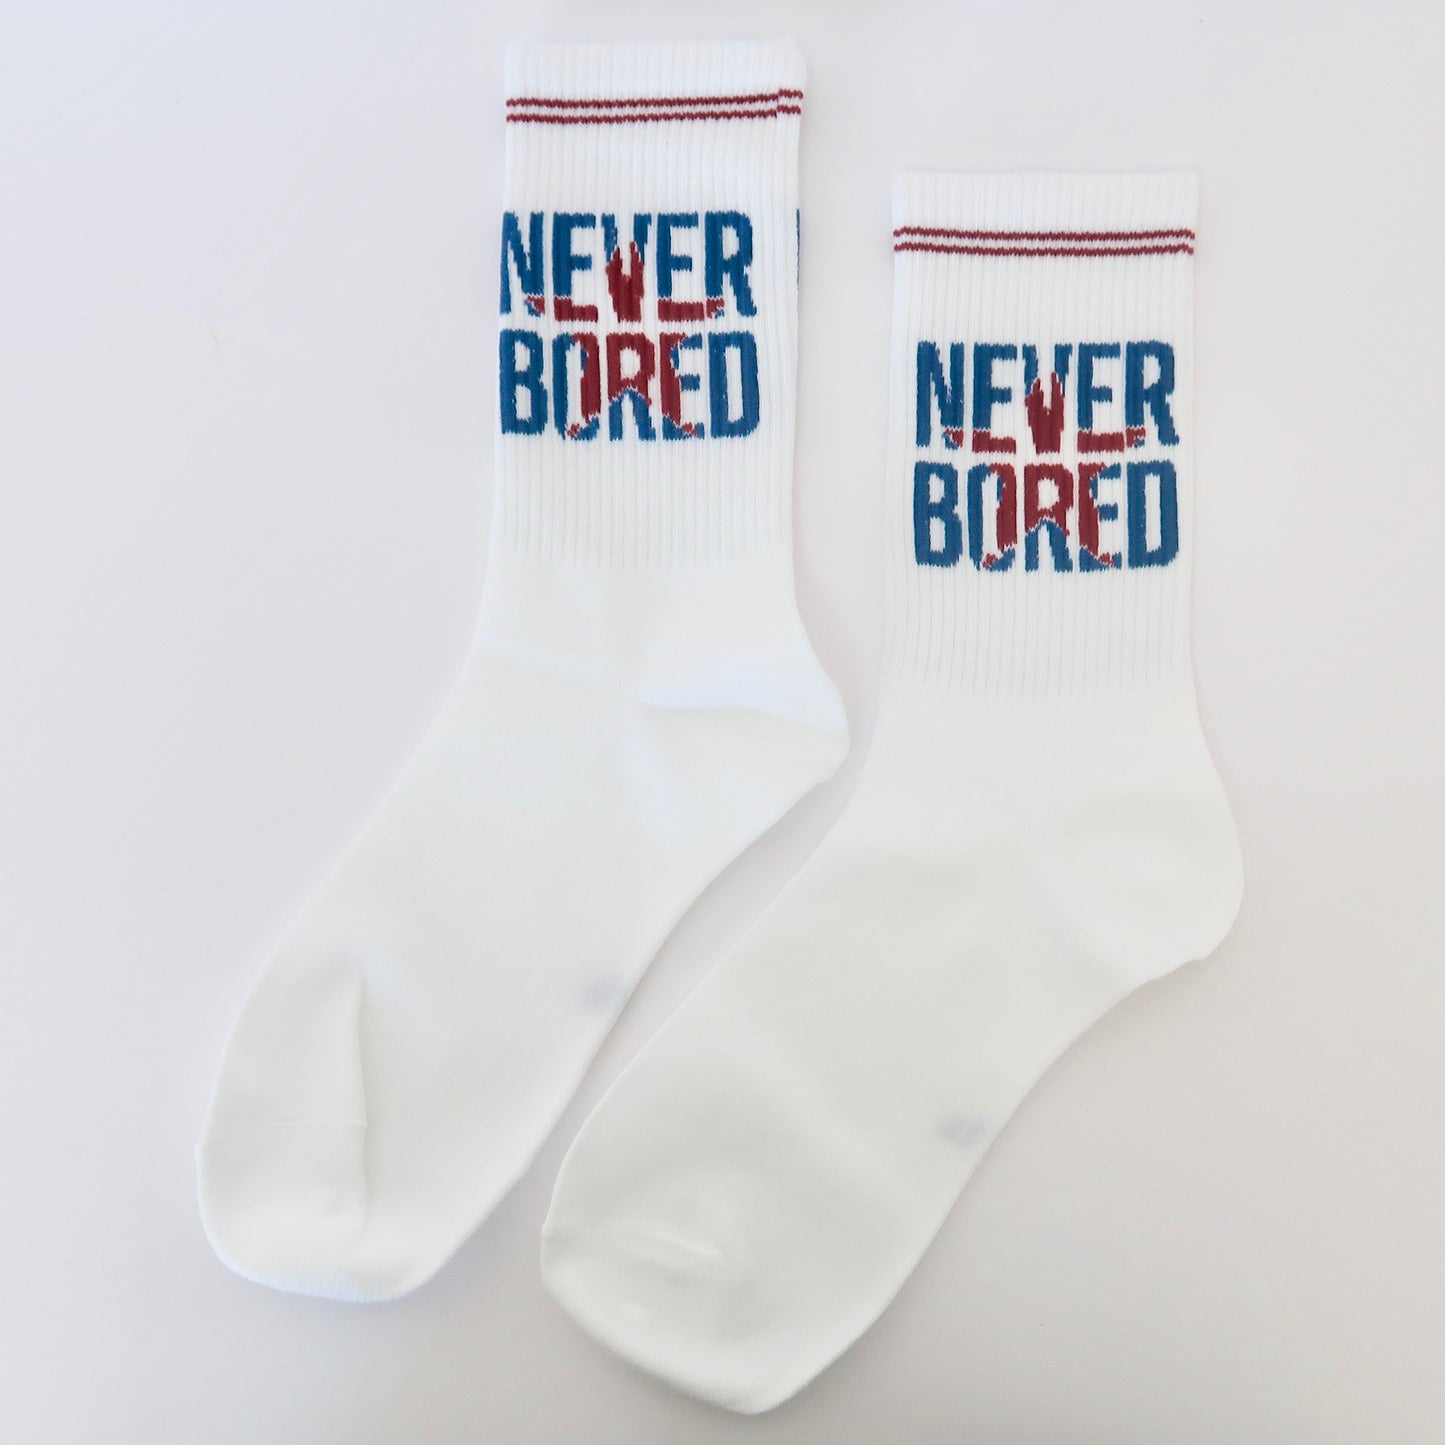 Never Bored All White Adult Socks